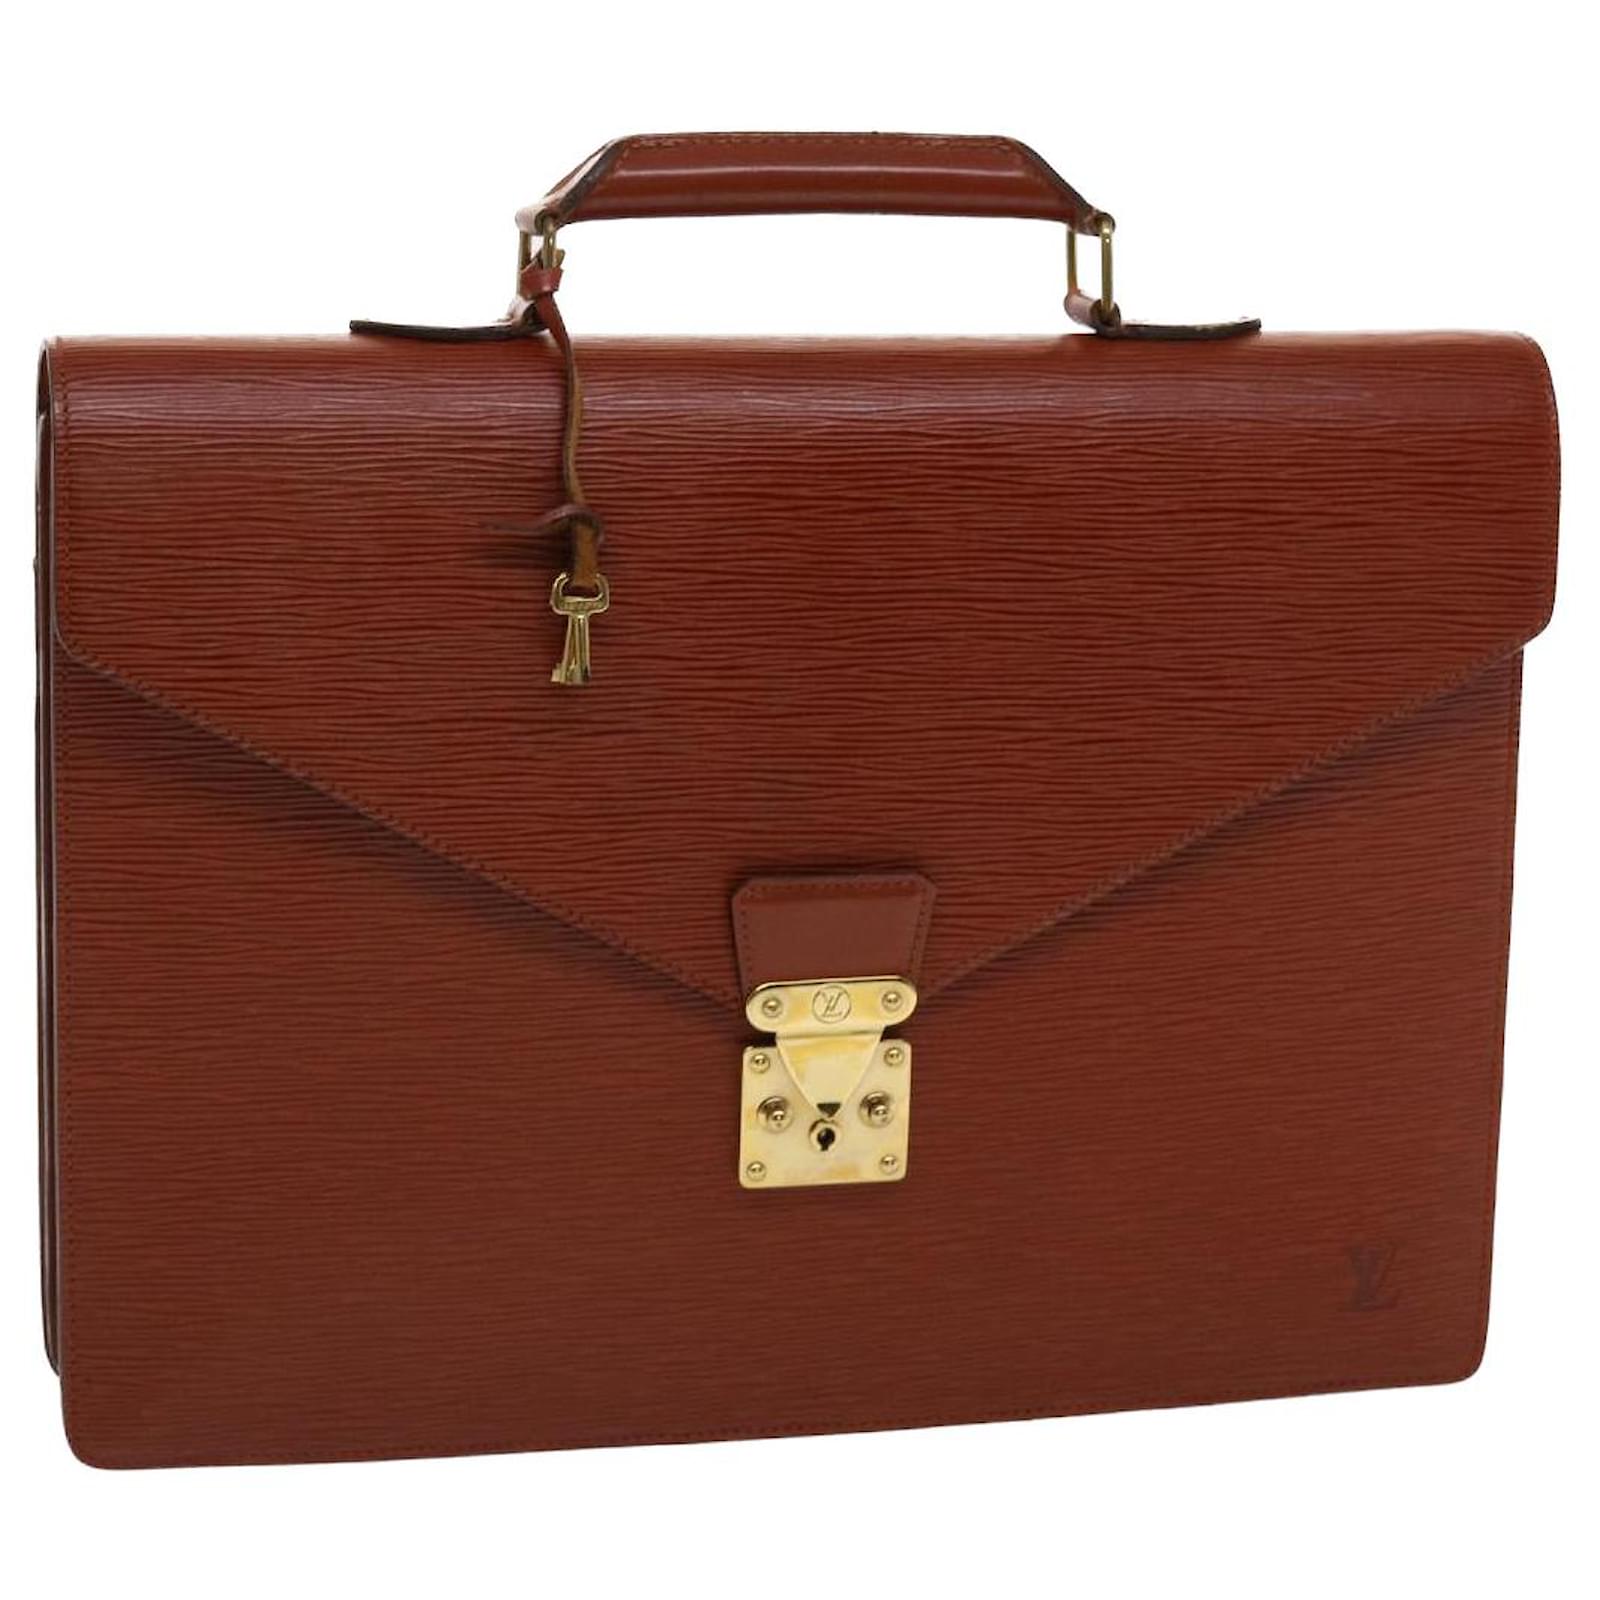 Auth LOUIS VUITTON PORTE DOCUMENTS VOYAGE Business Bag Briefcase Epi  Leather